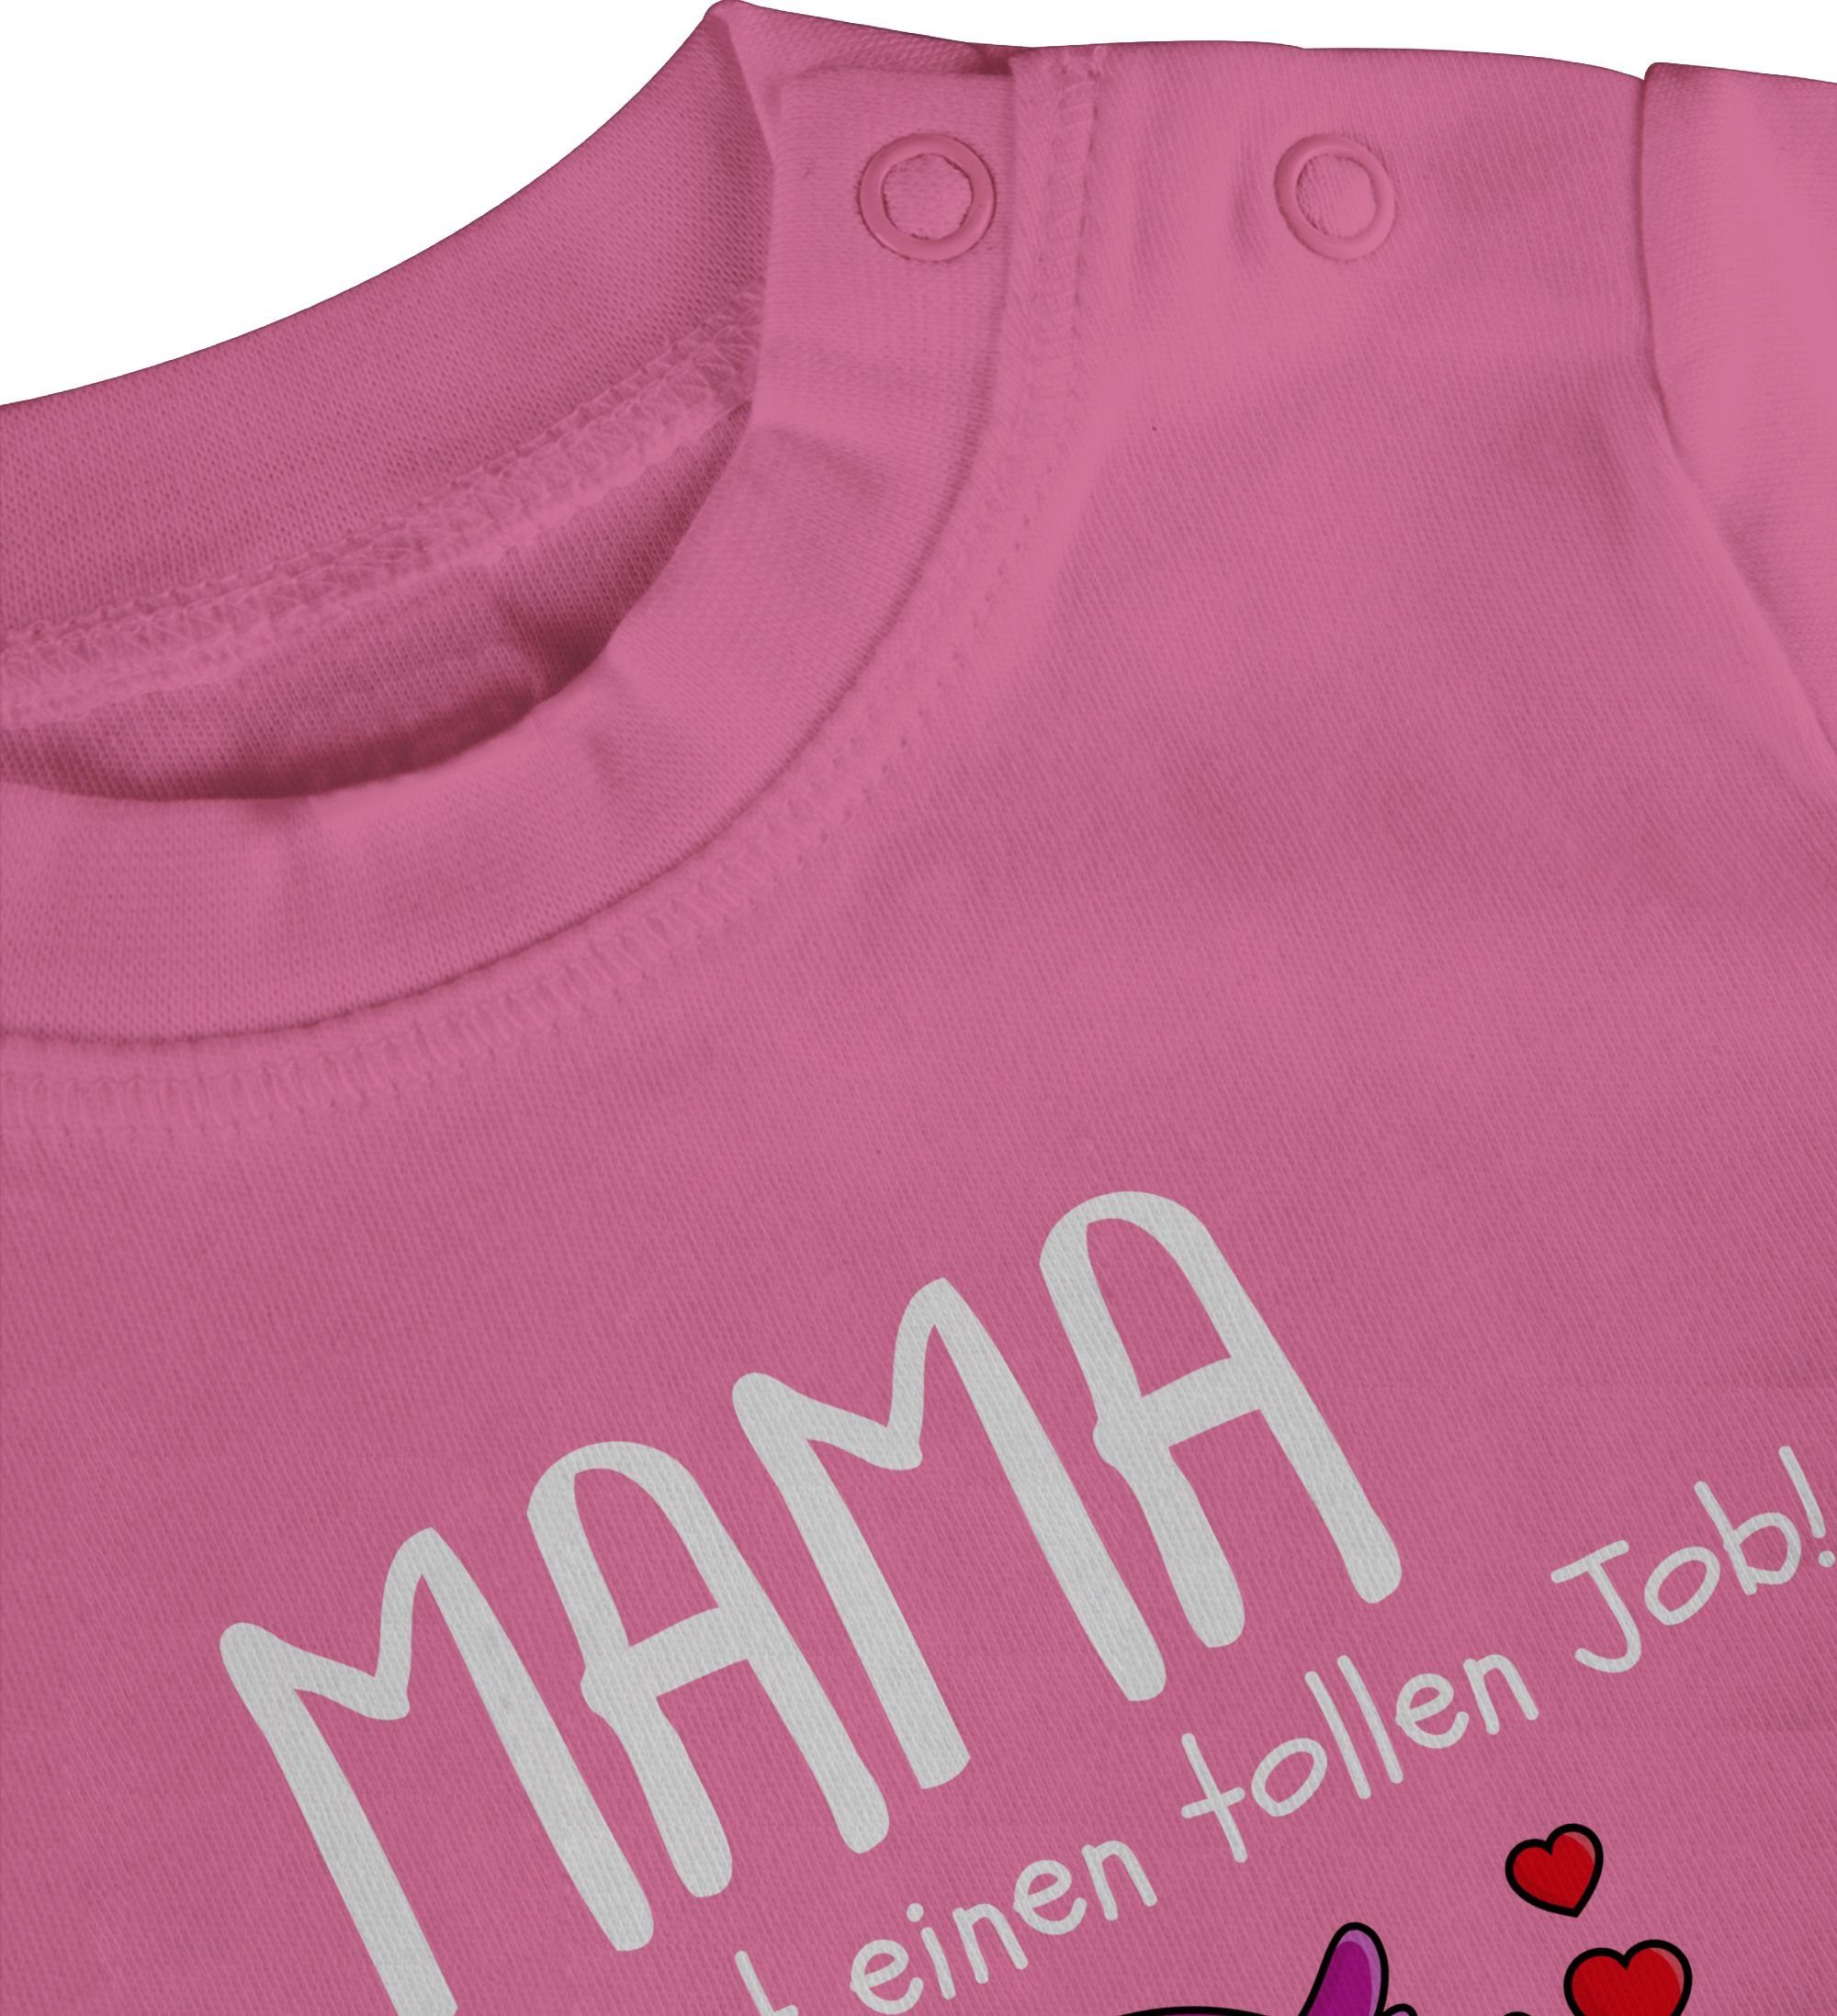 Shirtracer T-Shirt machst Muttertagsgeschenk du tollen I Pink Mama Muttertag 1. einen Job 2